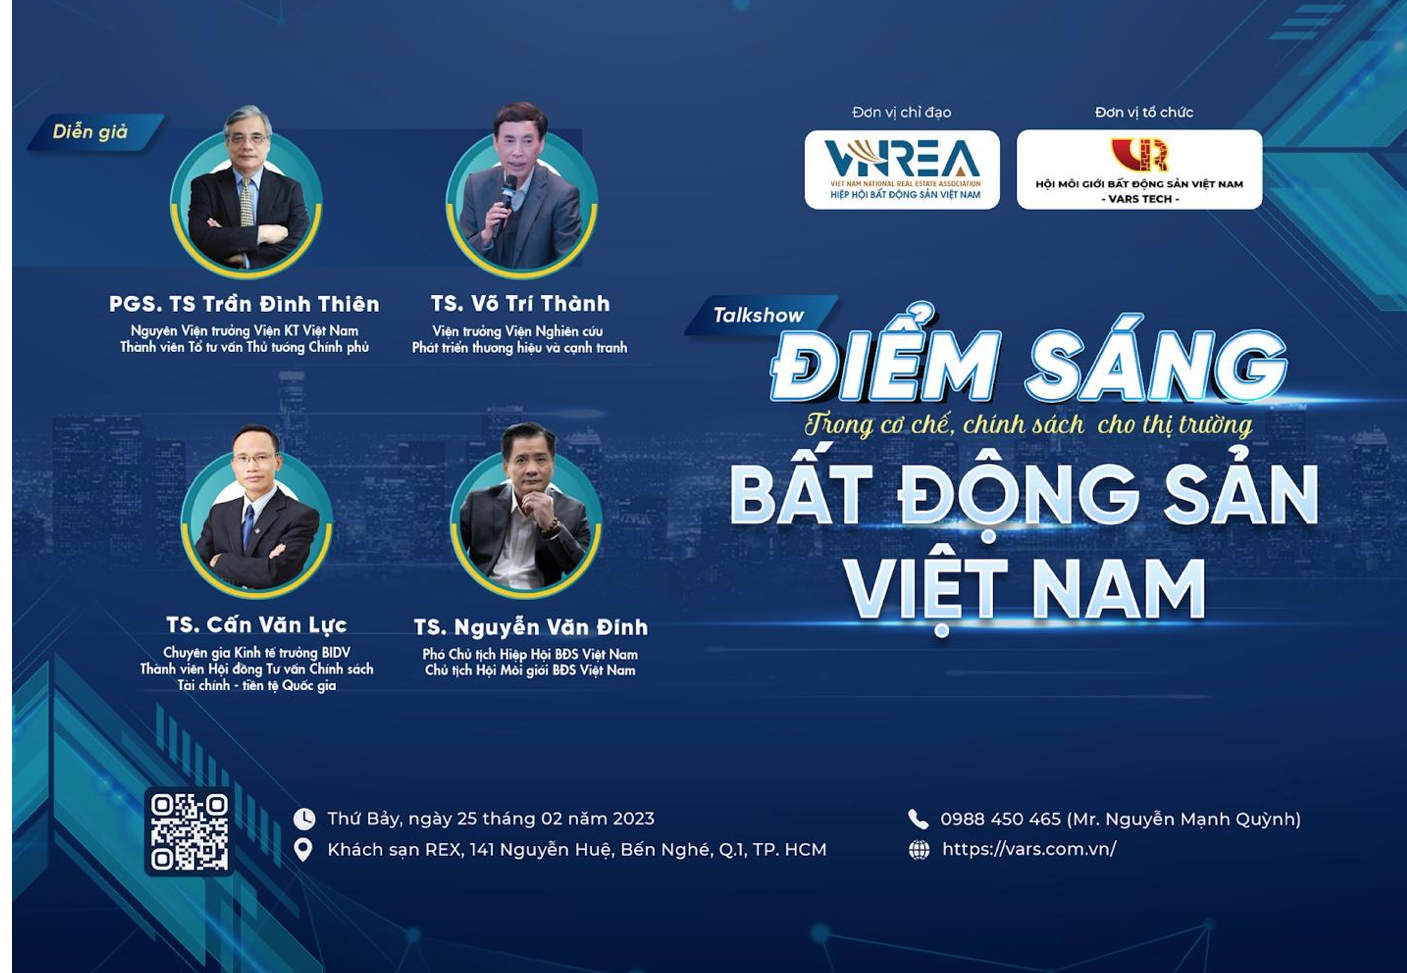 Talkshow “Điểm sáng trong cơ chế, chính sách cho thị trường BĐS Việt Nam” và Hội nghị Ban chấp hành VARS 2023